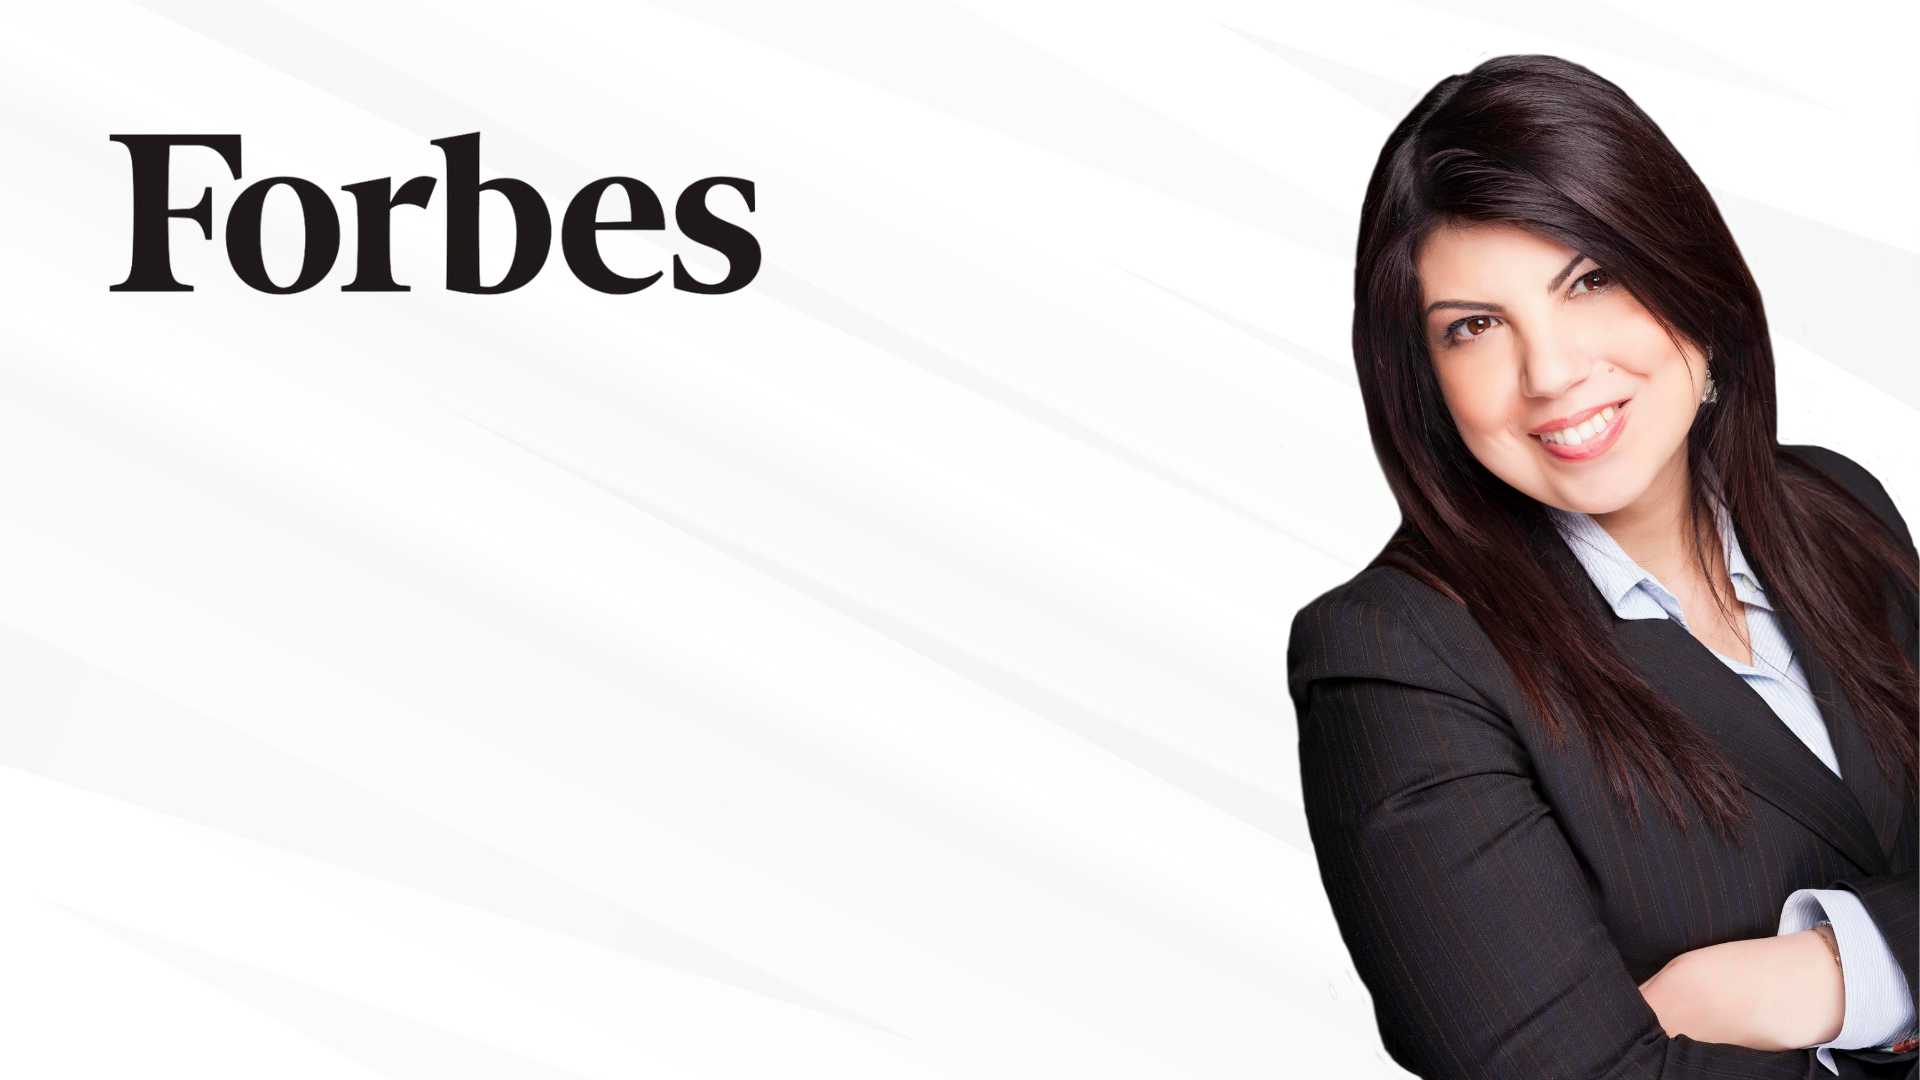 Vincere davanti alla corte dell’opinione pubblica / Marianna Valletta intervistata da Forbes